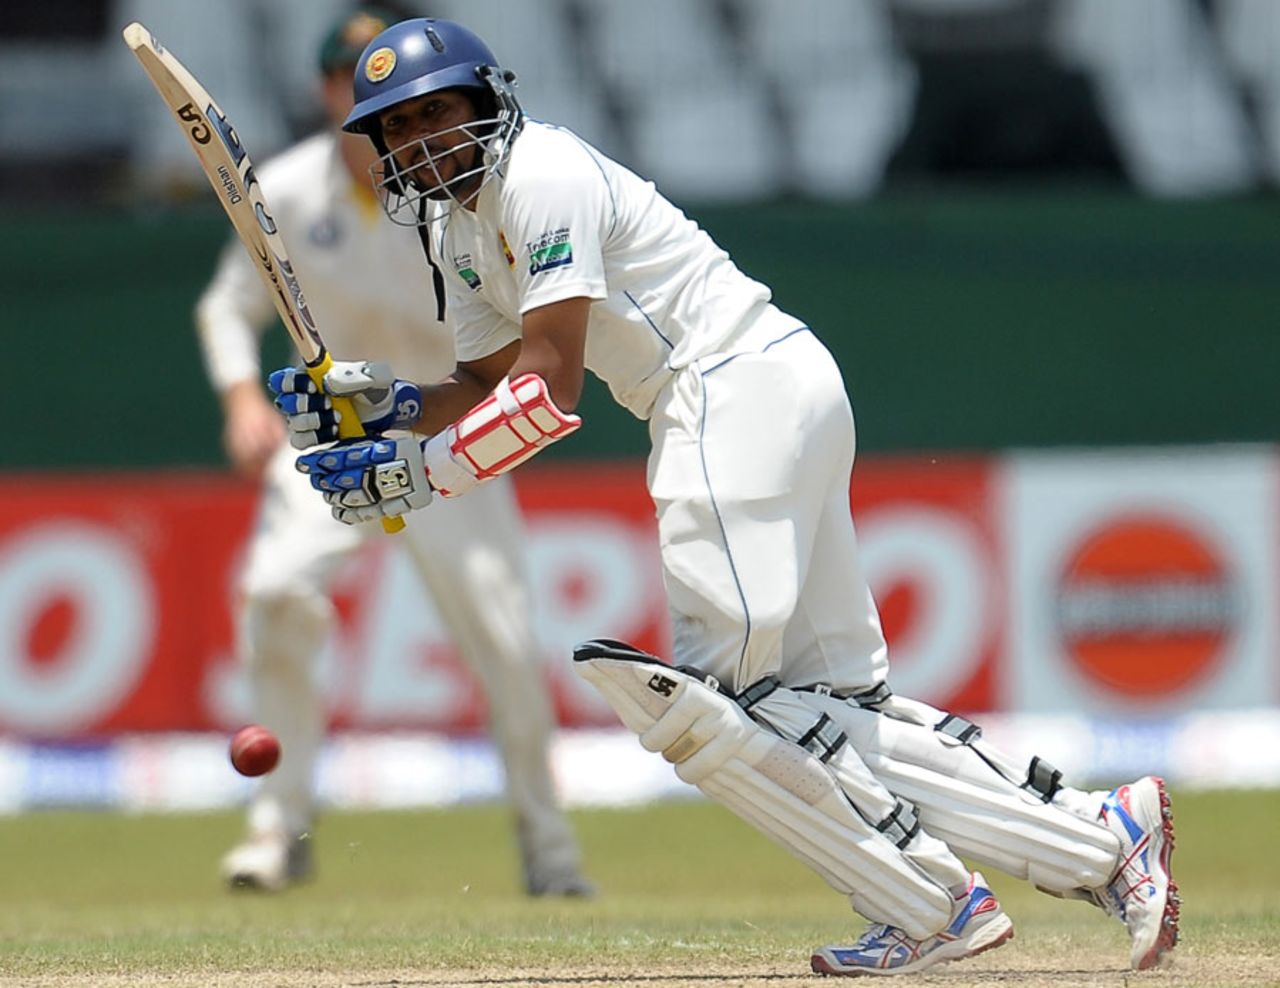 Tillakaratne Dilshan batted lower down the order at No. 5, Sri Lanka v Australia, 3rd Test, SSC, Colombo, 3rd day, September 18, 2011